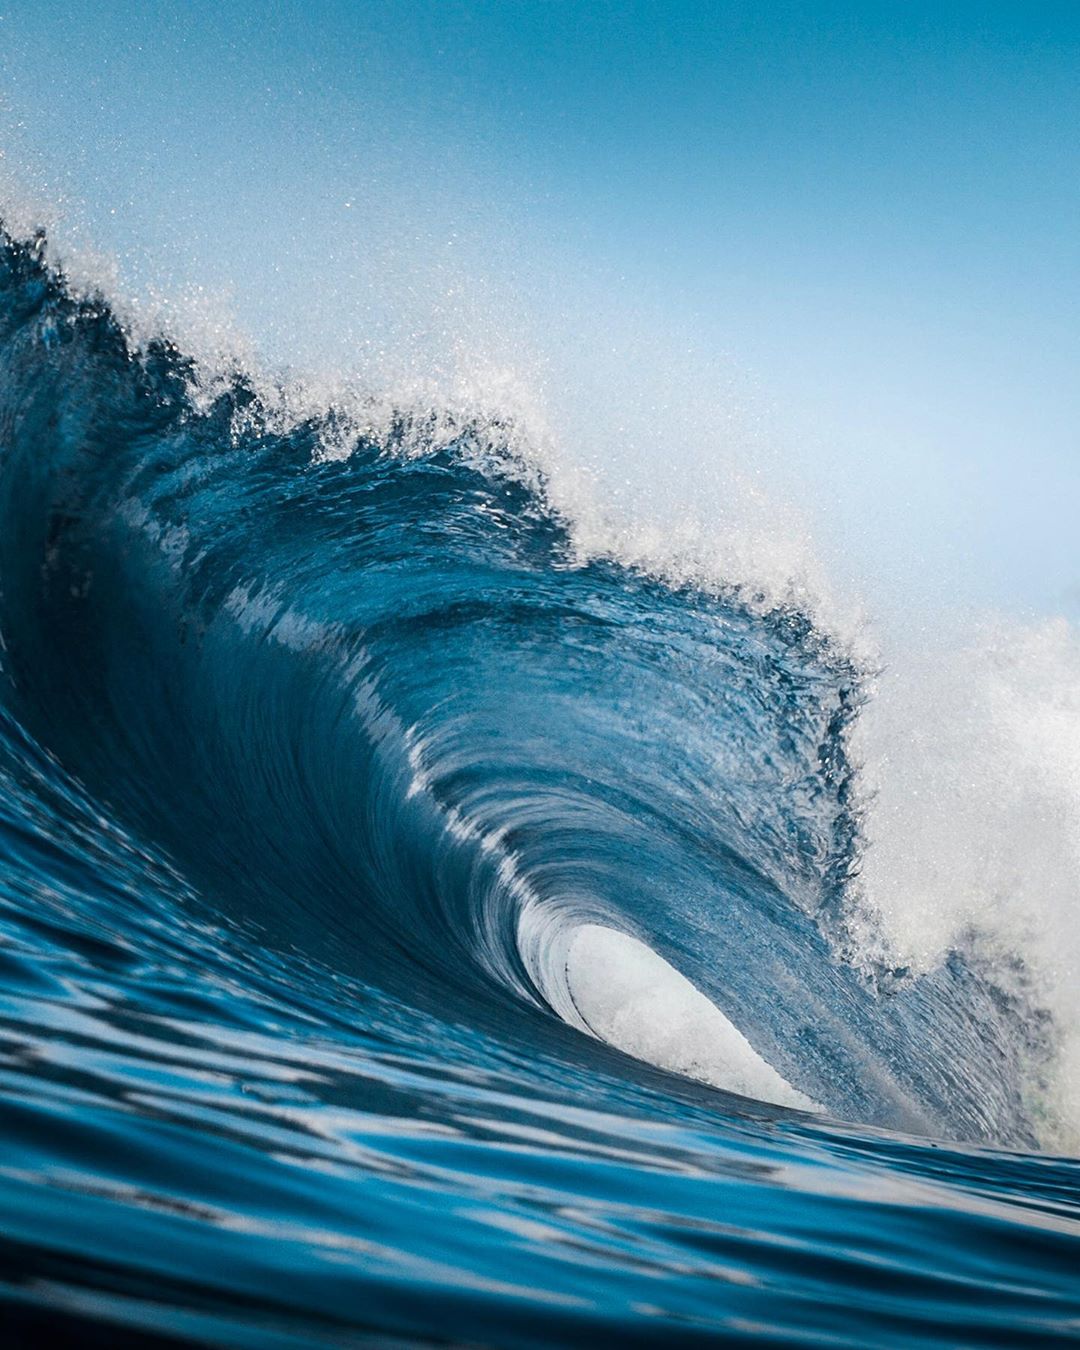 Бездонный мир моря на фантастических снимках Беннетта Ломбардо вода,море,тревел-фото